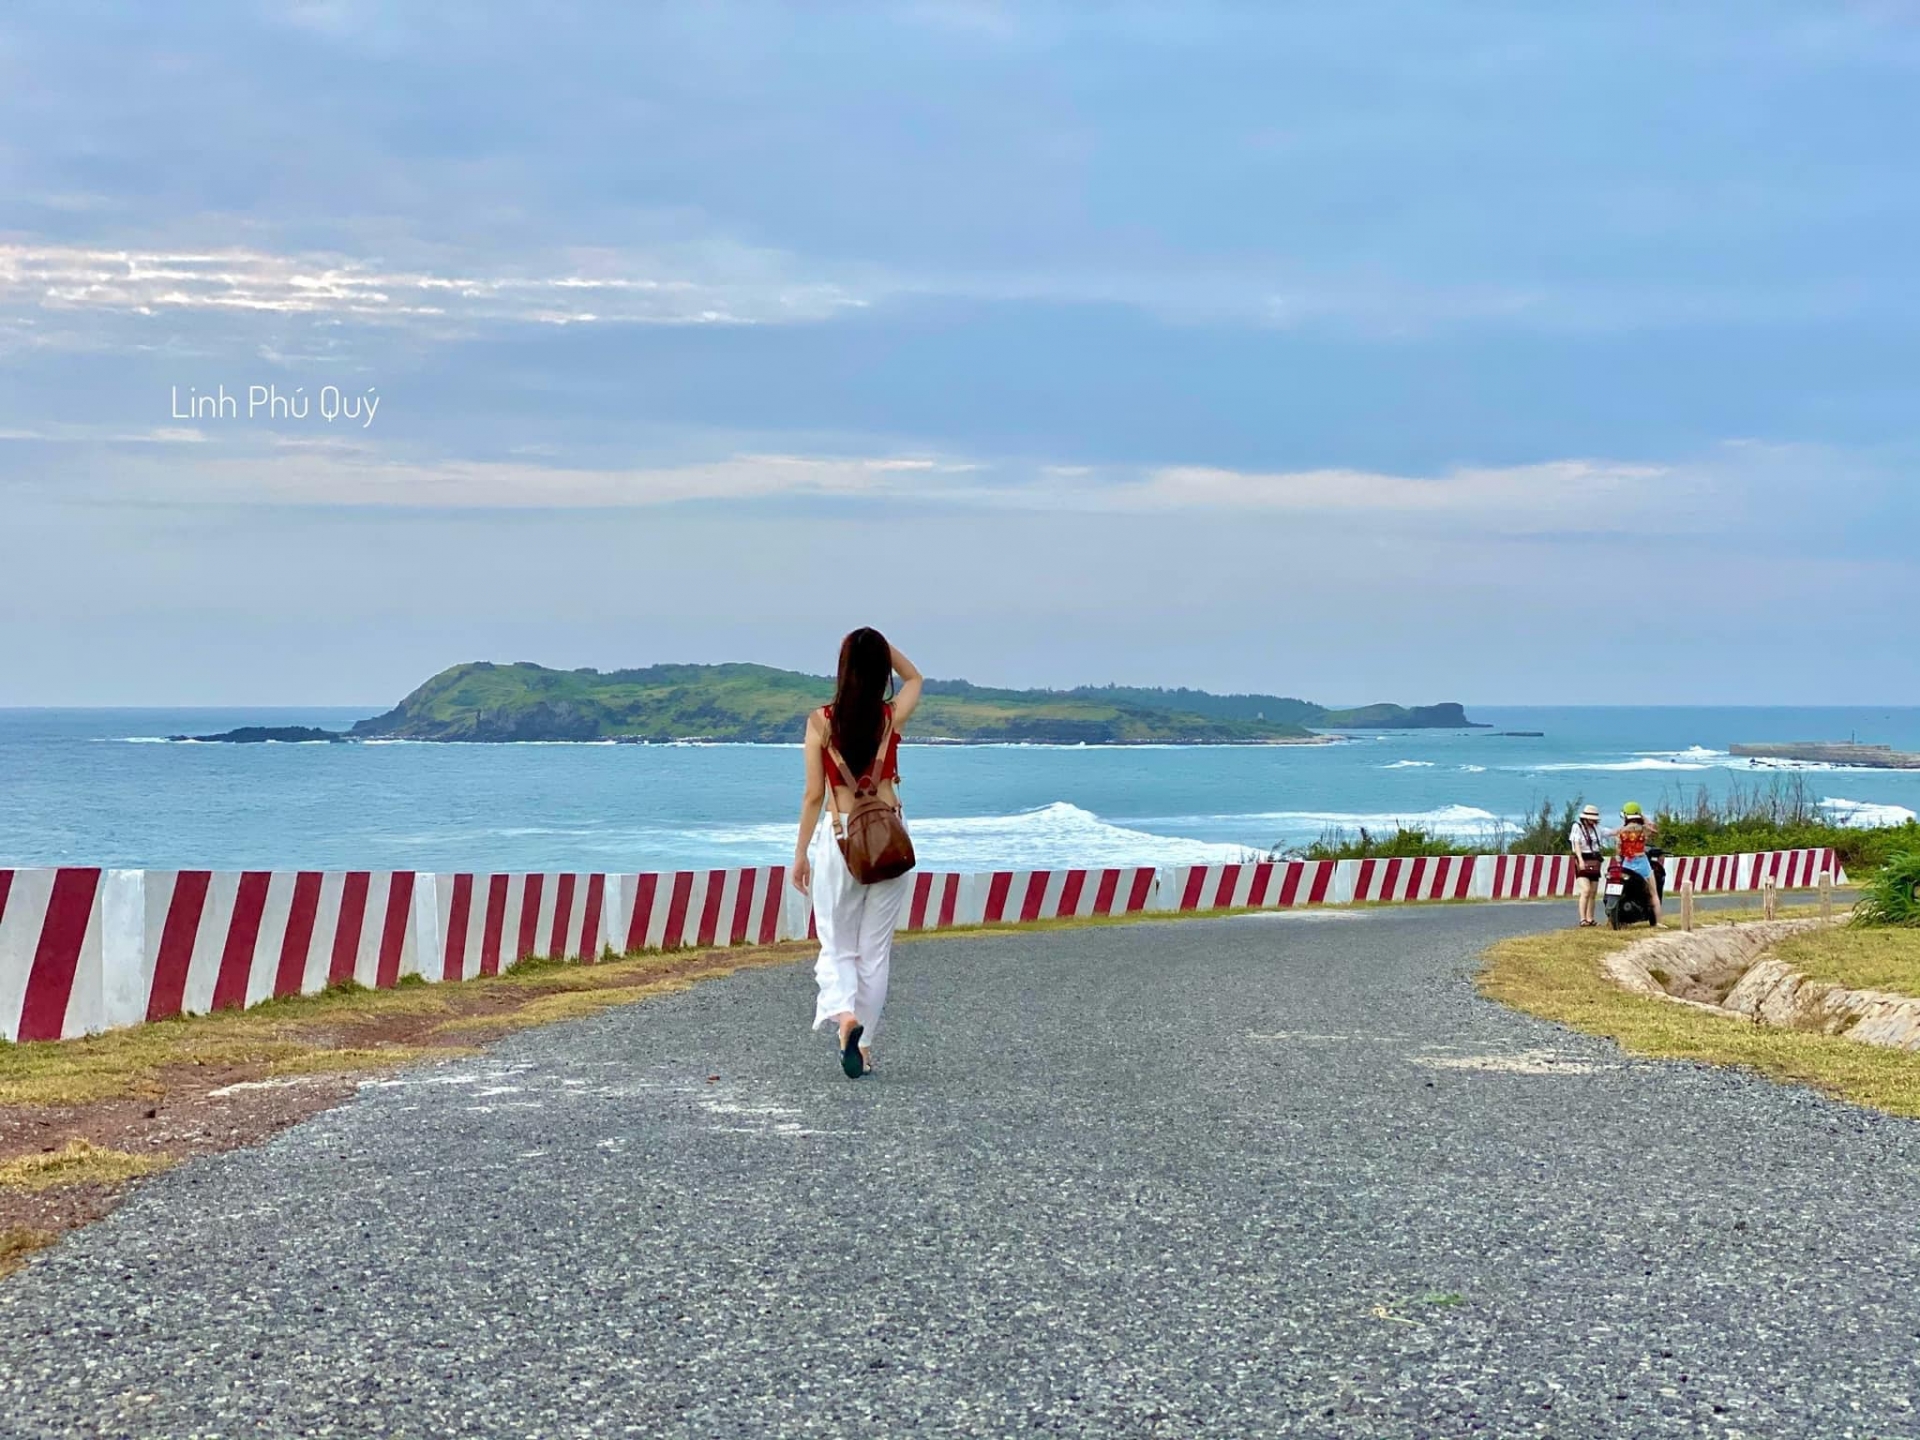 Con đường biển đẹp như tranh ở Phú Quý. Ảnh: Linh Phú Quý.